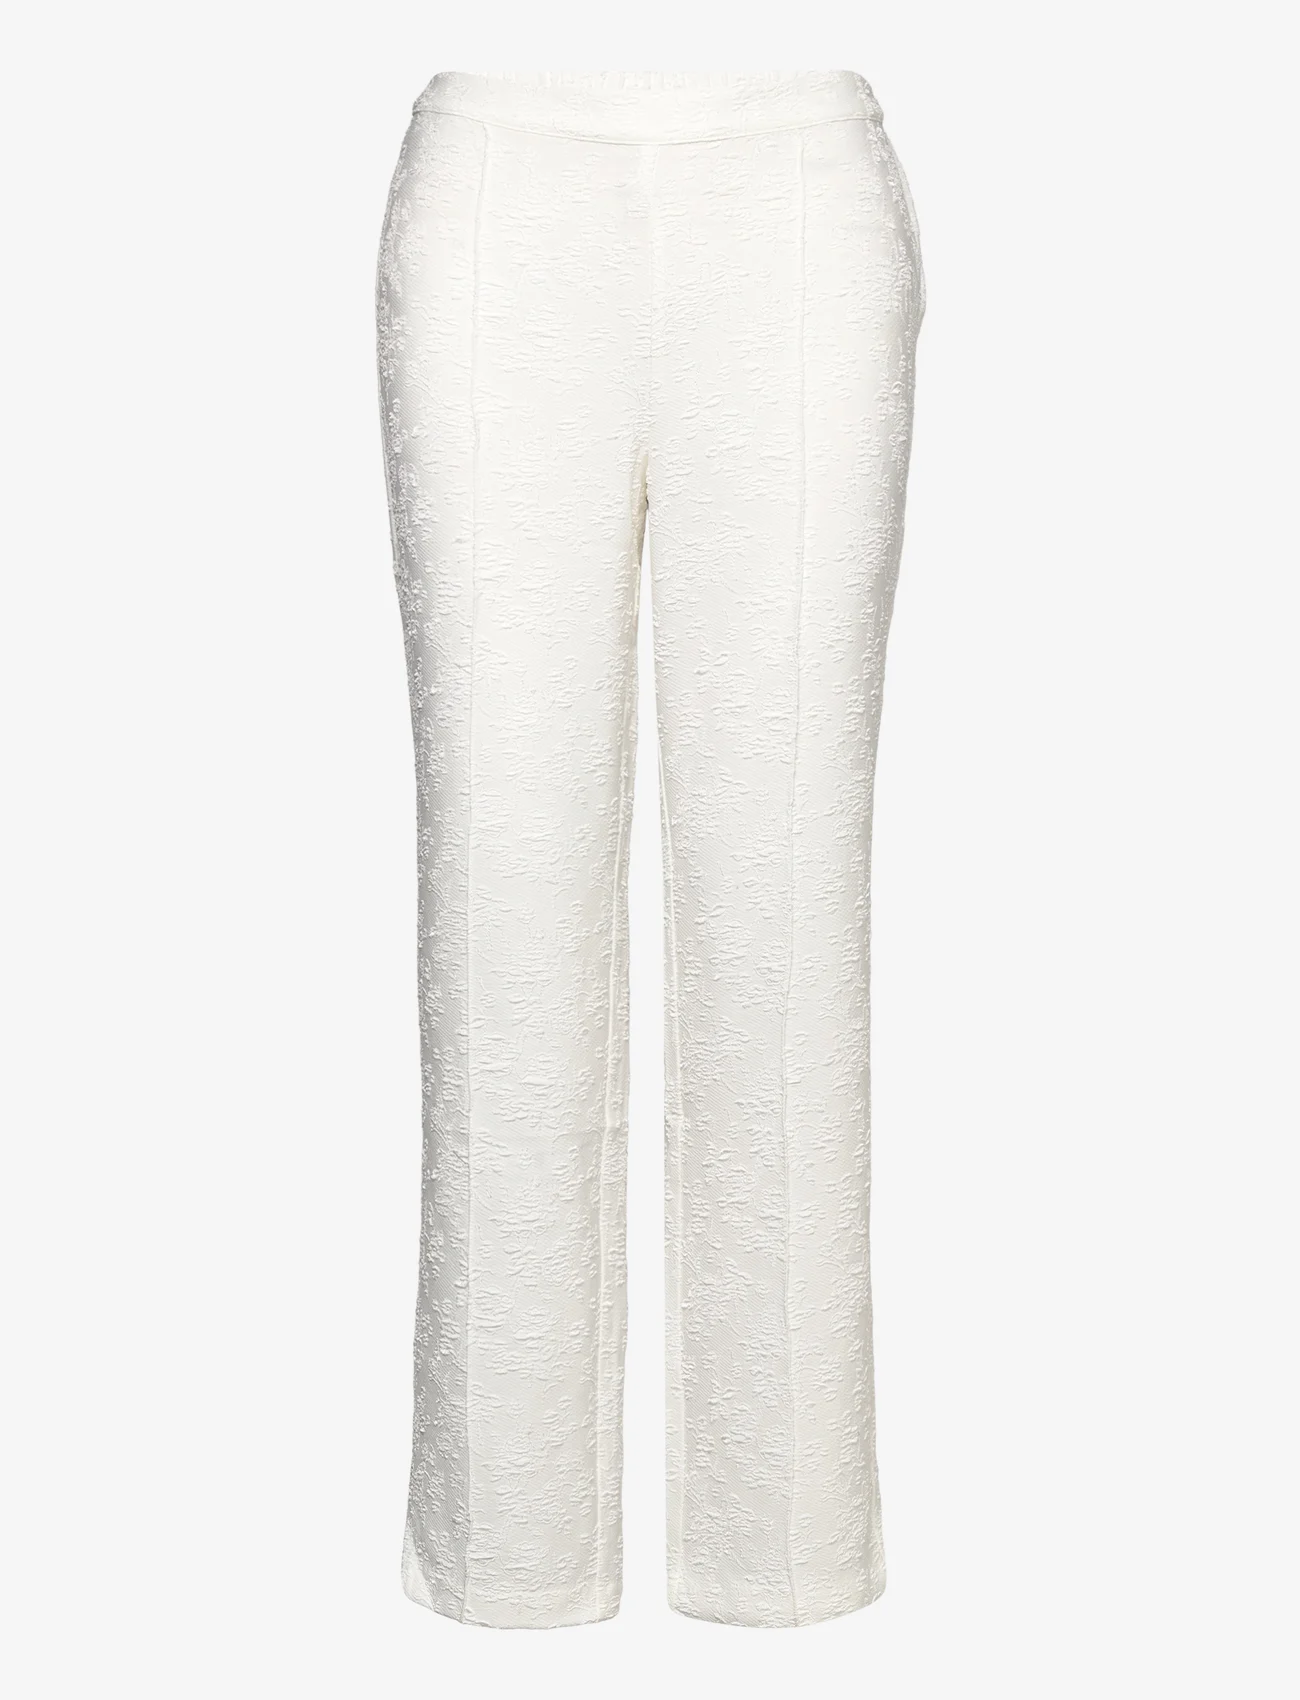 A-View - Tanja pant - broeken met rechte pijp - white - 0